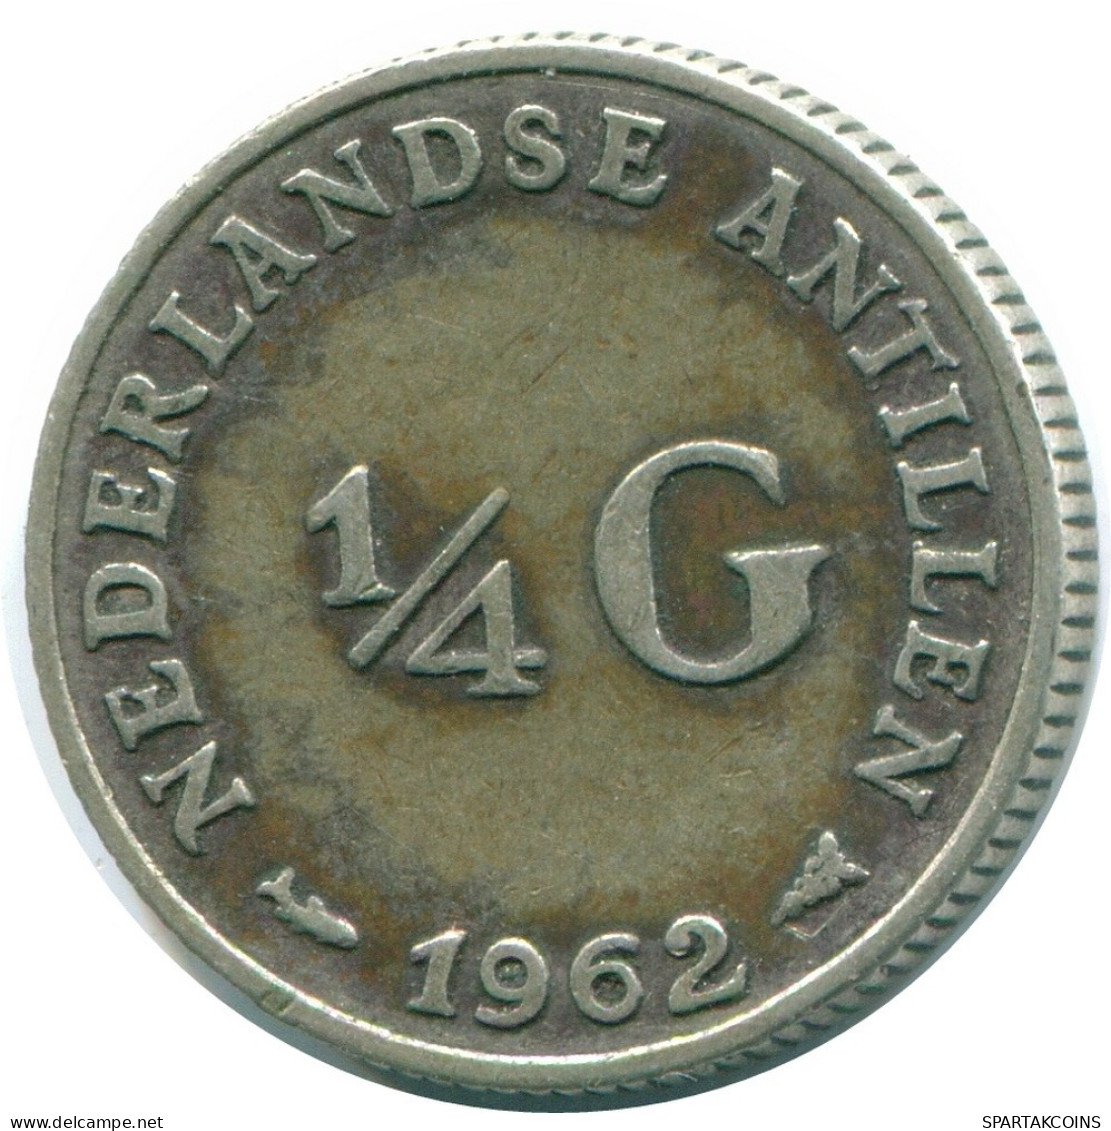 1/4 GULDEN 1962 NIEDERLÄNDISCHE ANTILLEN SILBER Koloniale Münze #NL11152.4.D.A - Antille Olandesi